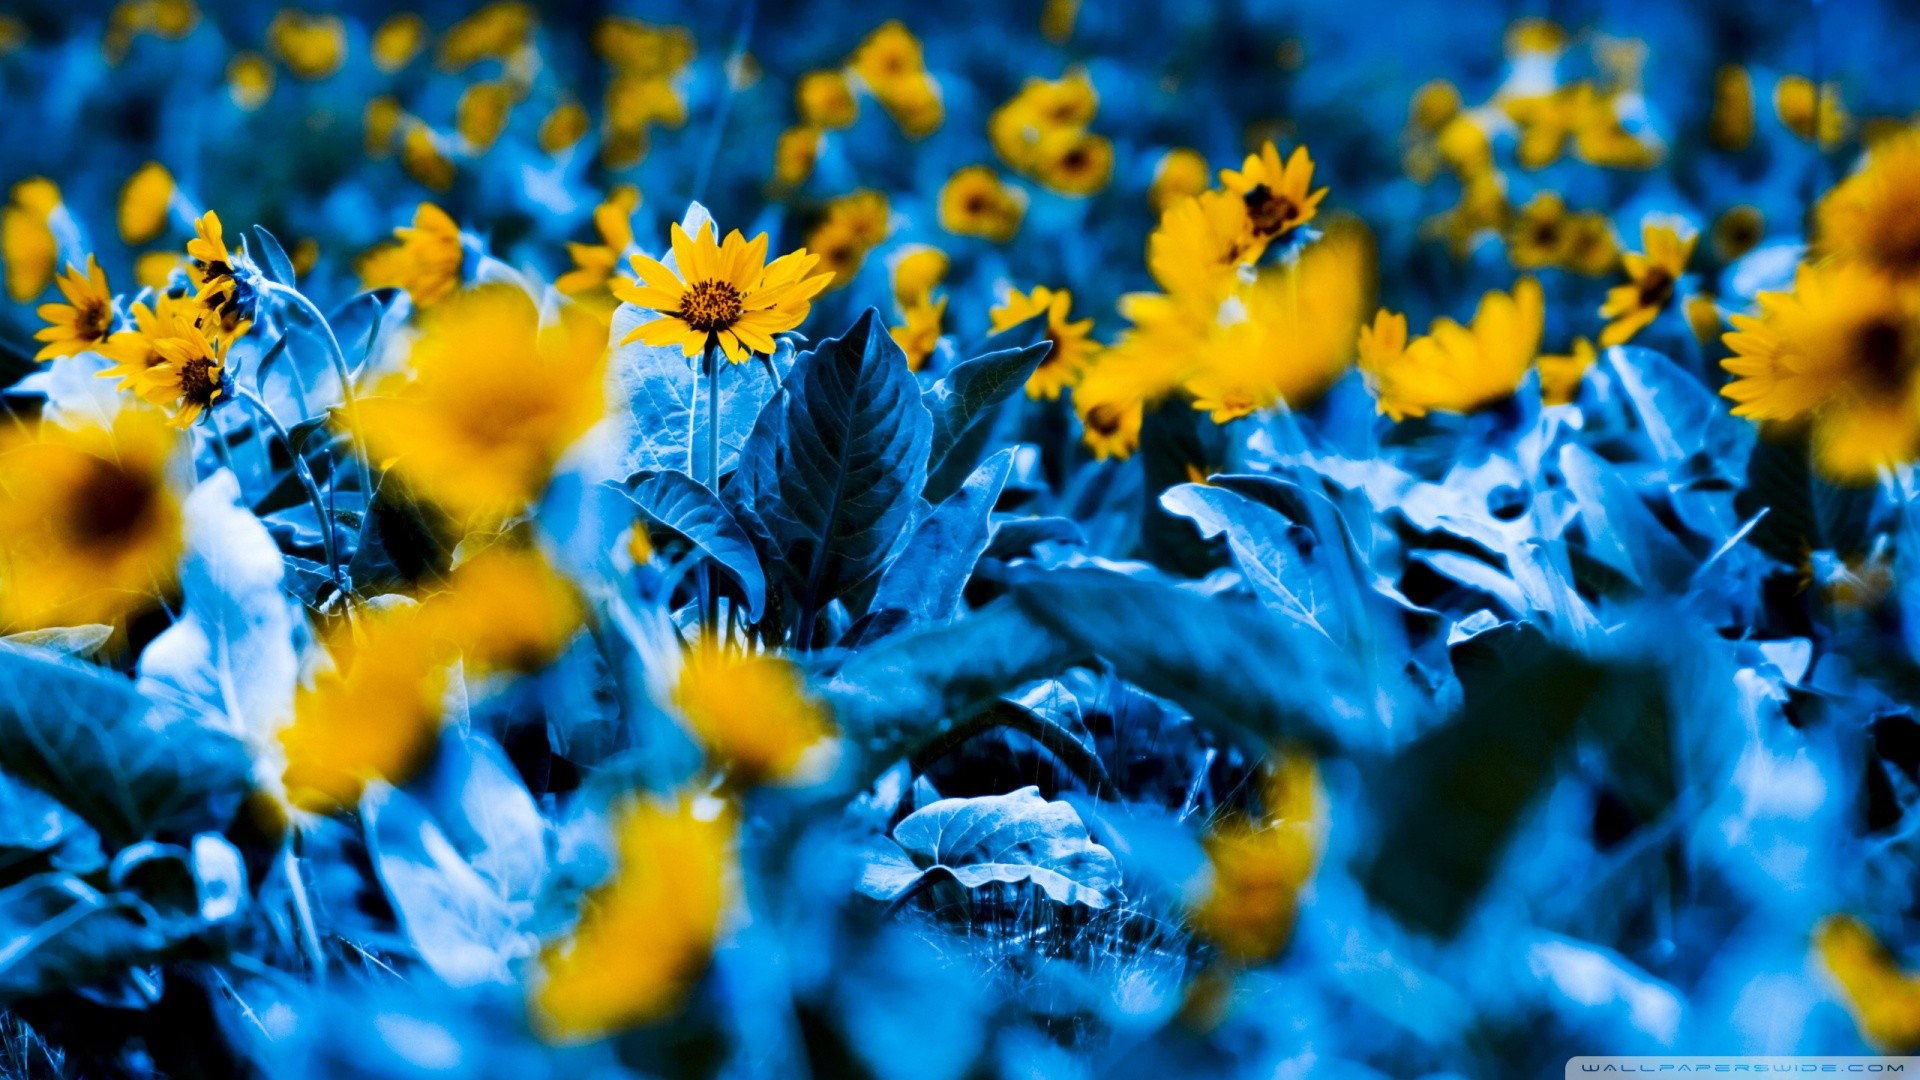 General 1920x1080 flowers blue yellow flowers macro field plants